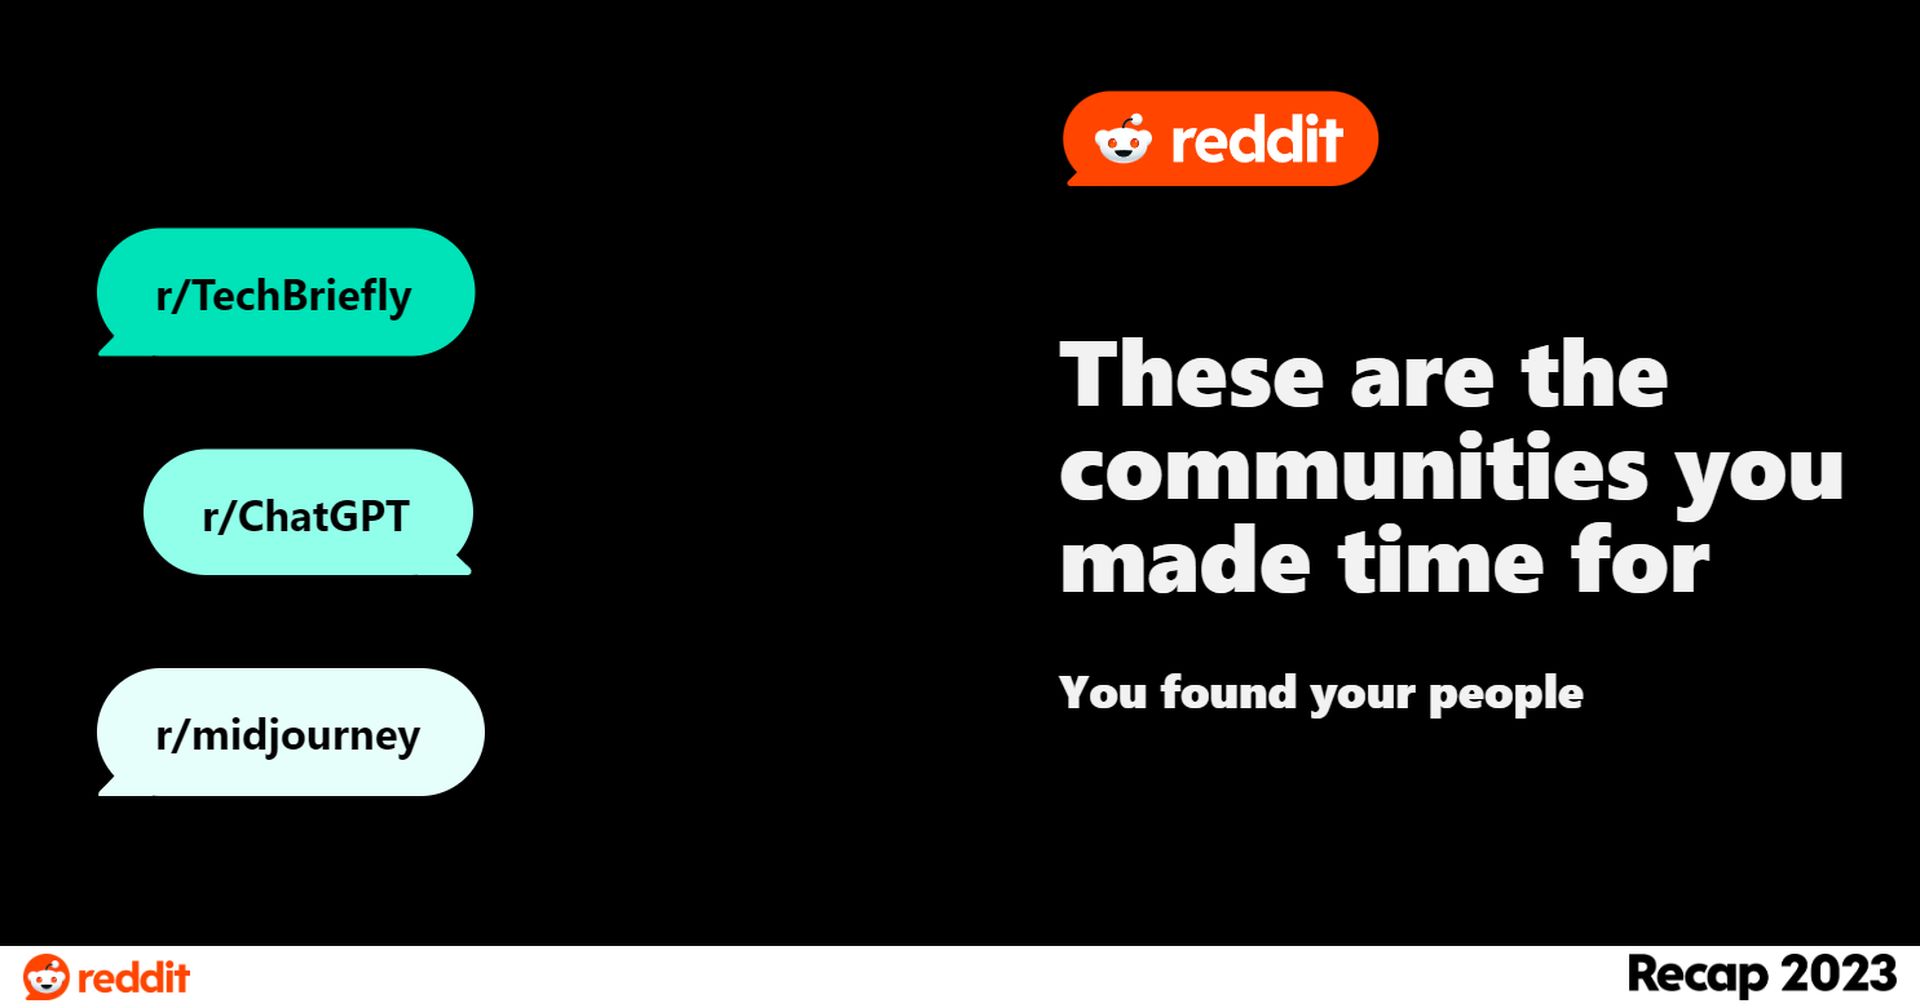 วิธีรับ Reddit Recap 2023 ใน 4 ขั้นตอนง่ายๆ! เปิดเผยข้อมูลเชิงลึกที่ไม่ซ้ำใคร ไฮไลท์ของชุมชน และช่วงเวลาที่น่าจดจำ สำรวจตอนนี้!